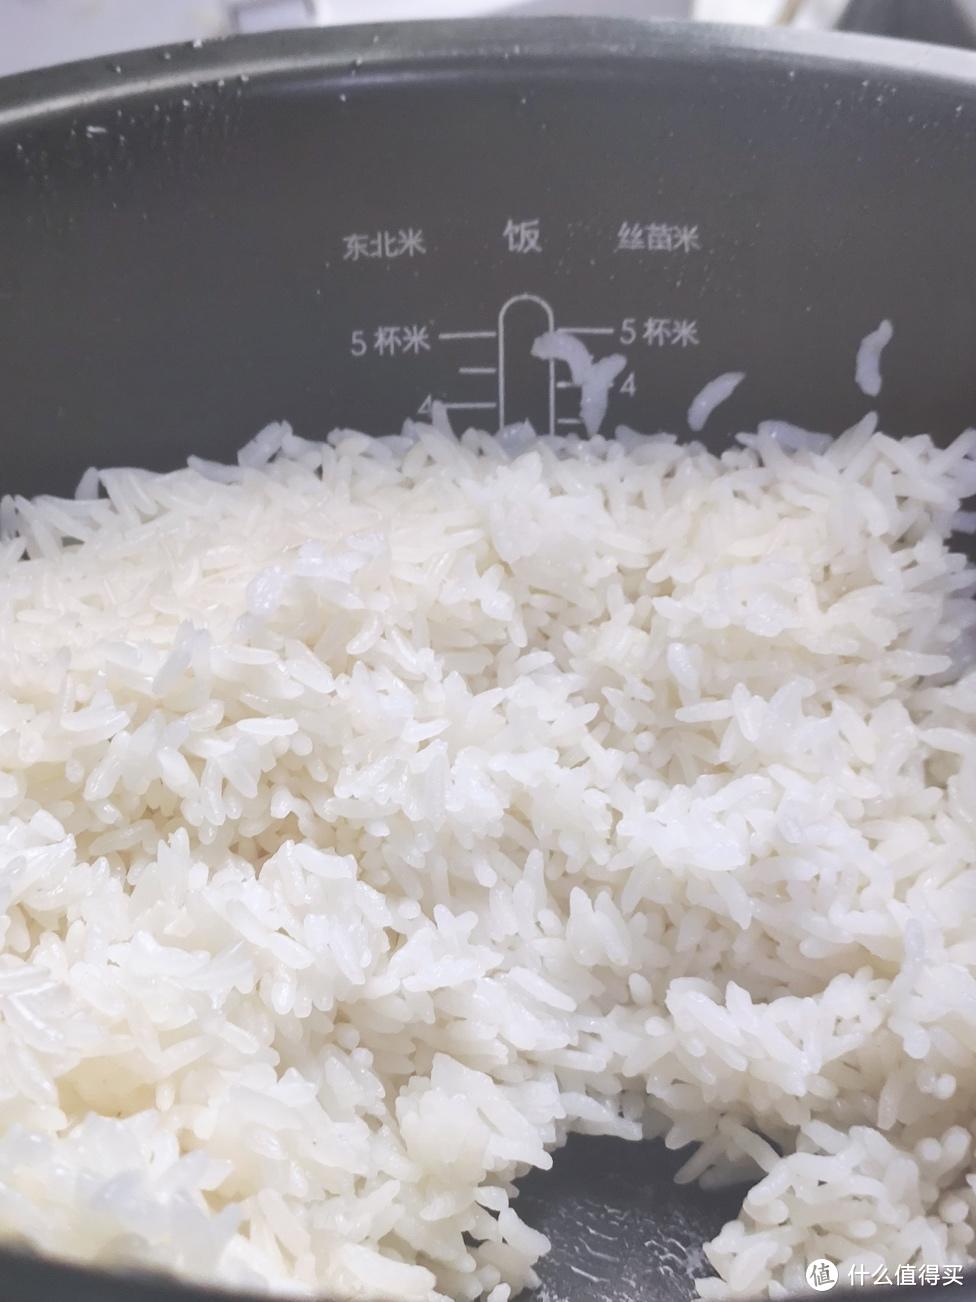 小米IH电饭煲为你做一碗好吃的米饭